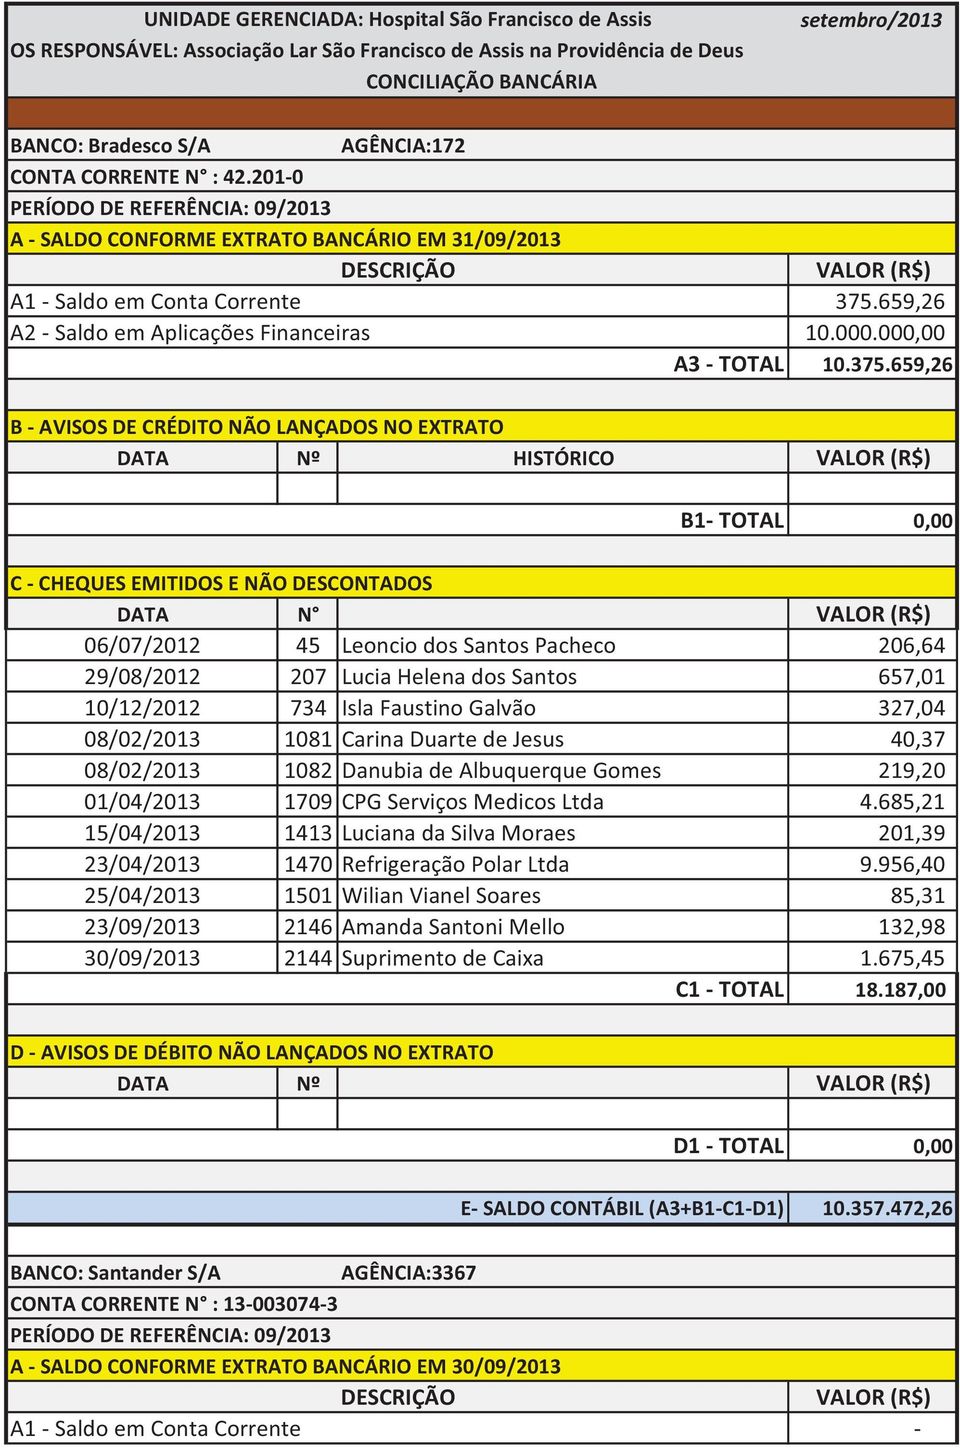 201-0 PERÍODO DE REFERÊNCIA: 09/2013 A - SALDO CONFORME EXTRATO BANCÁRIO EM 31/09/2013 DESCRIÇÃO A1 - Saldo em Conta Corrente A2 - Saldo em Aplicações Financeiras A3 - TOTAL VALOR (R$) 375.659,26 10.